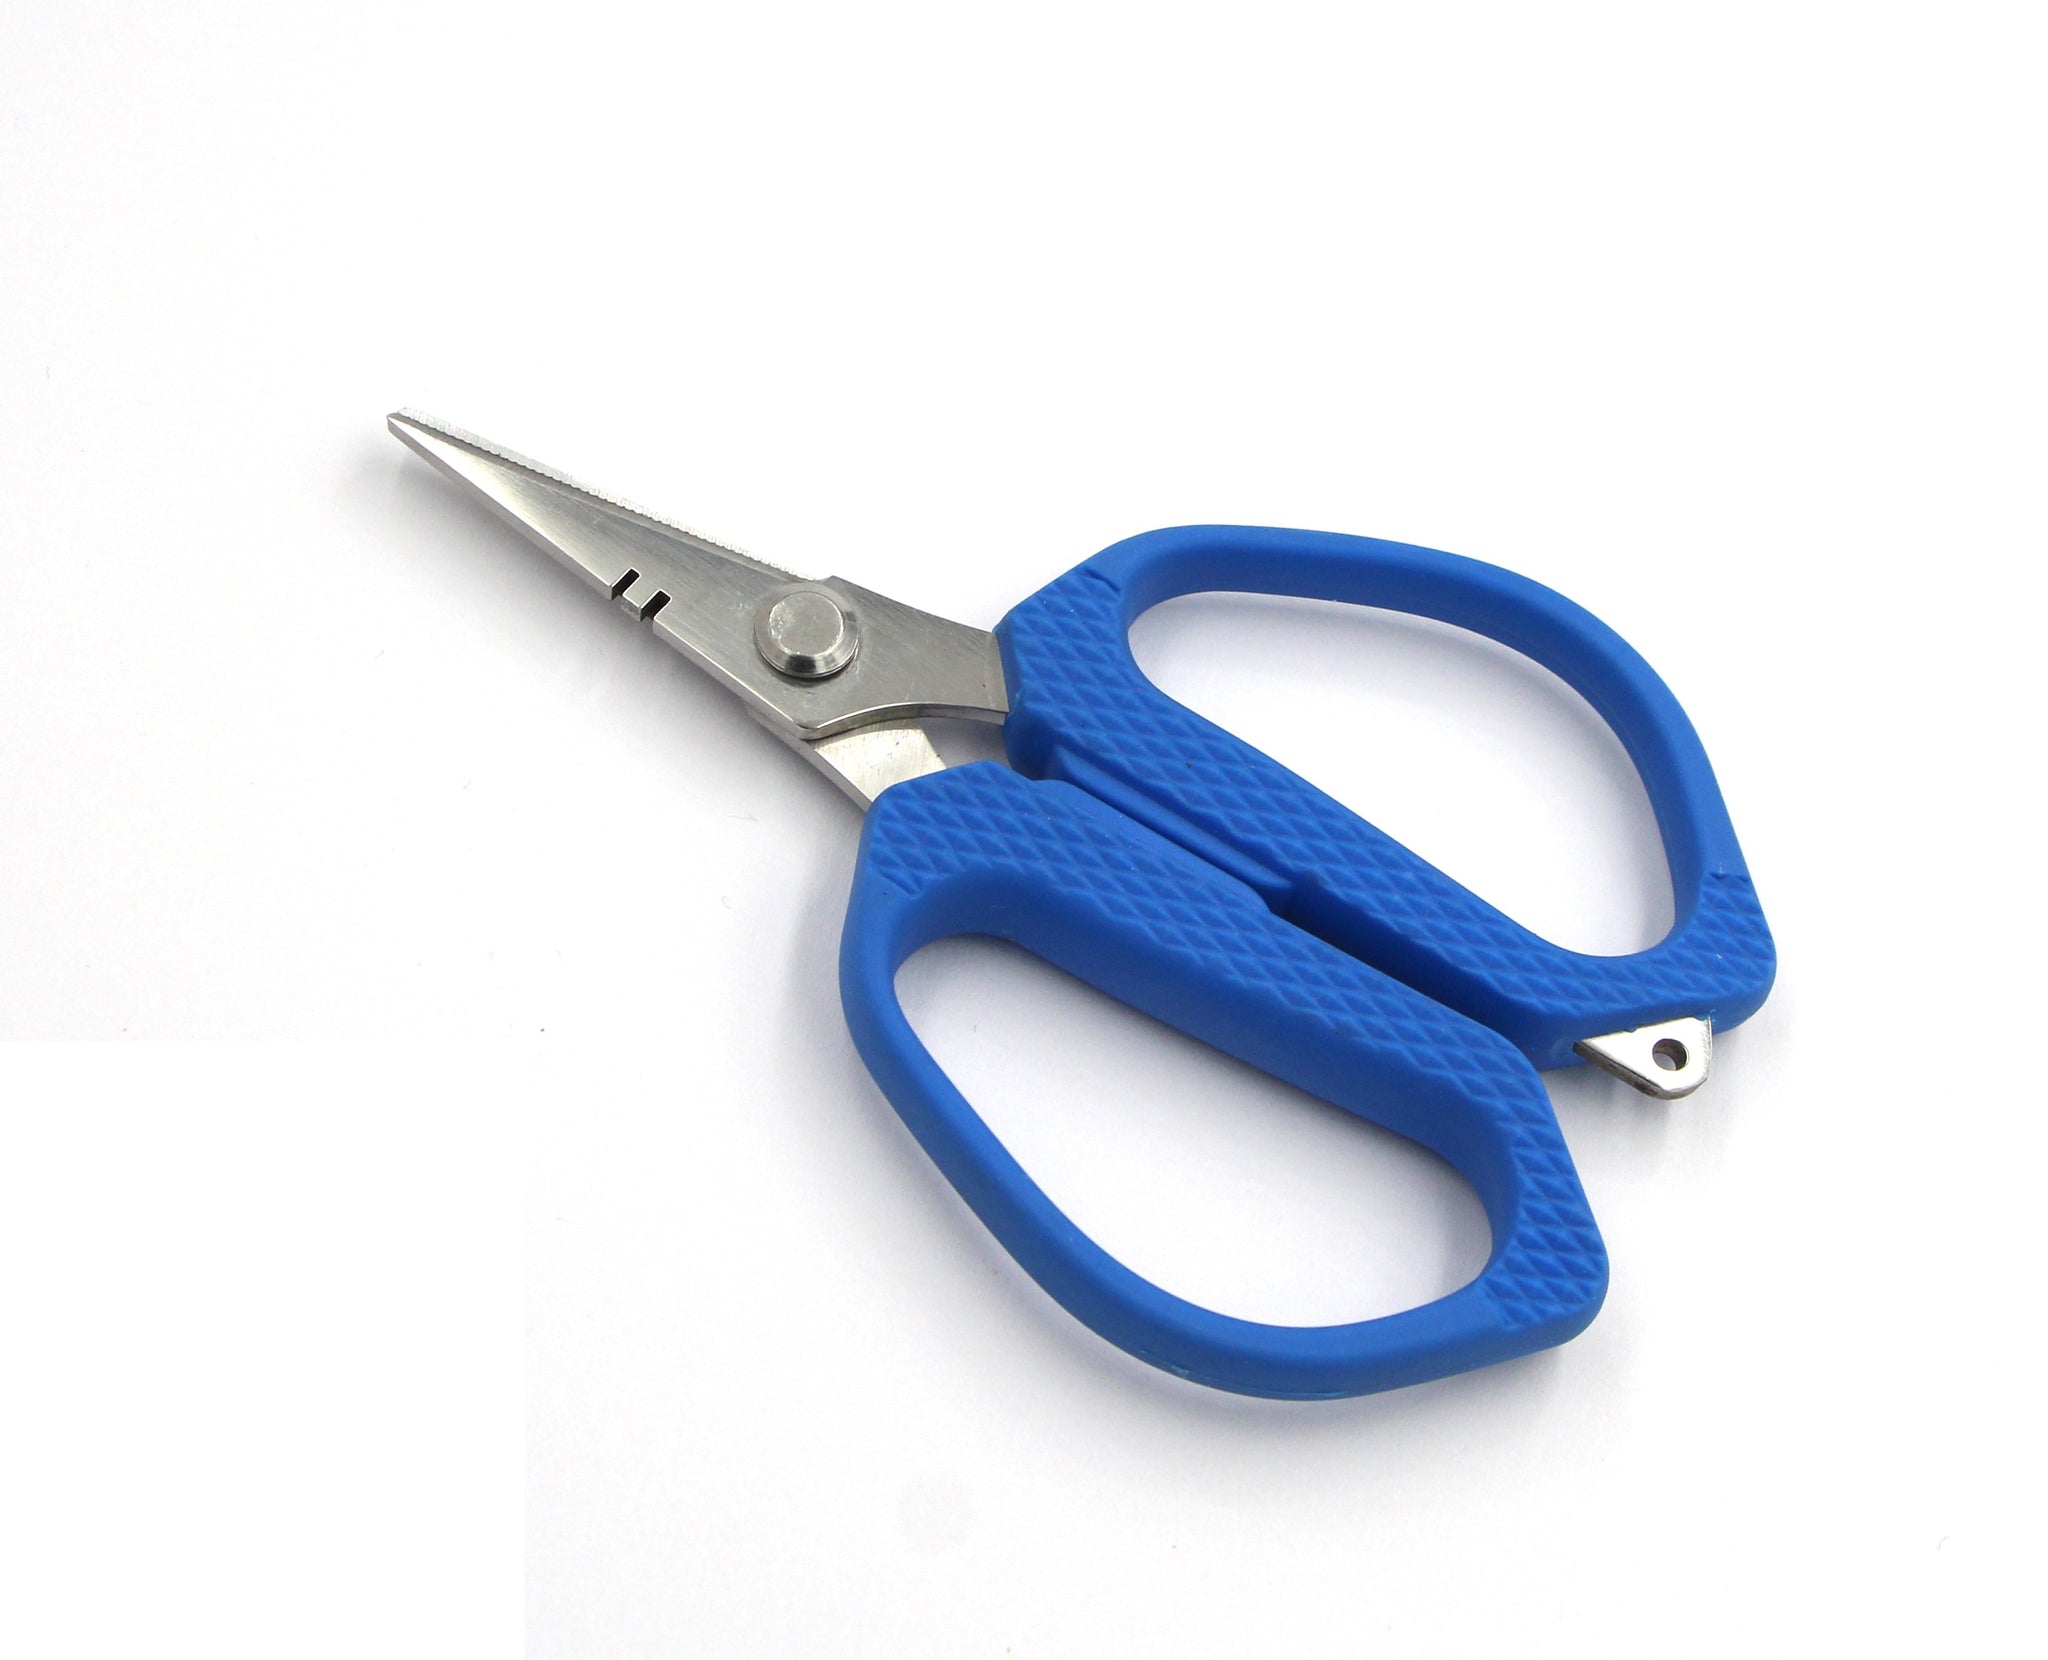 Braid Sharp Scissors – Ohero Fishing Products